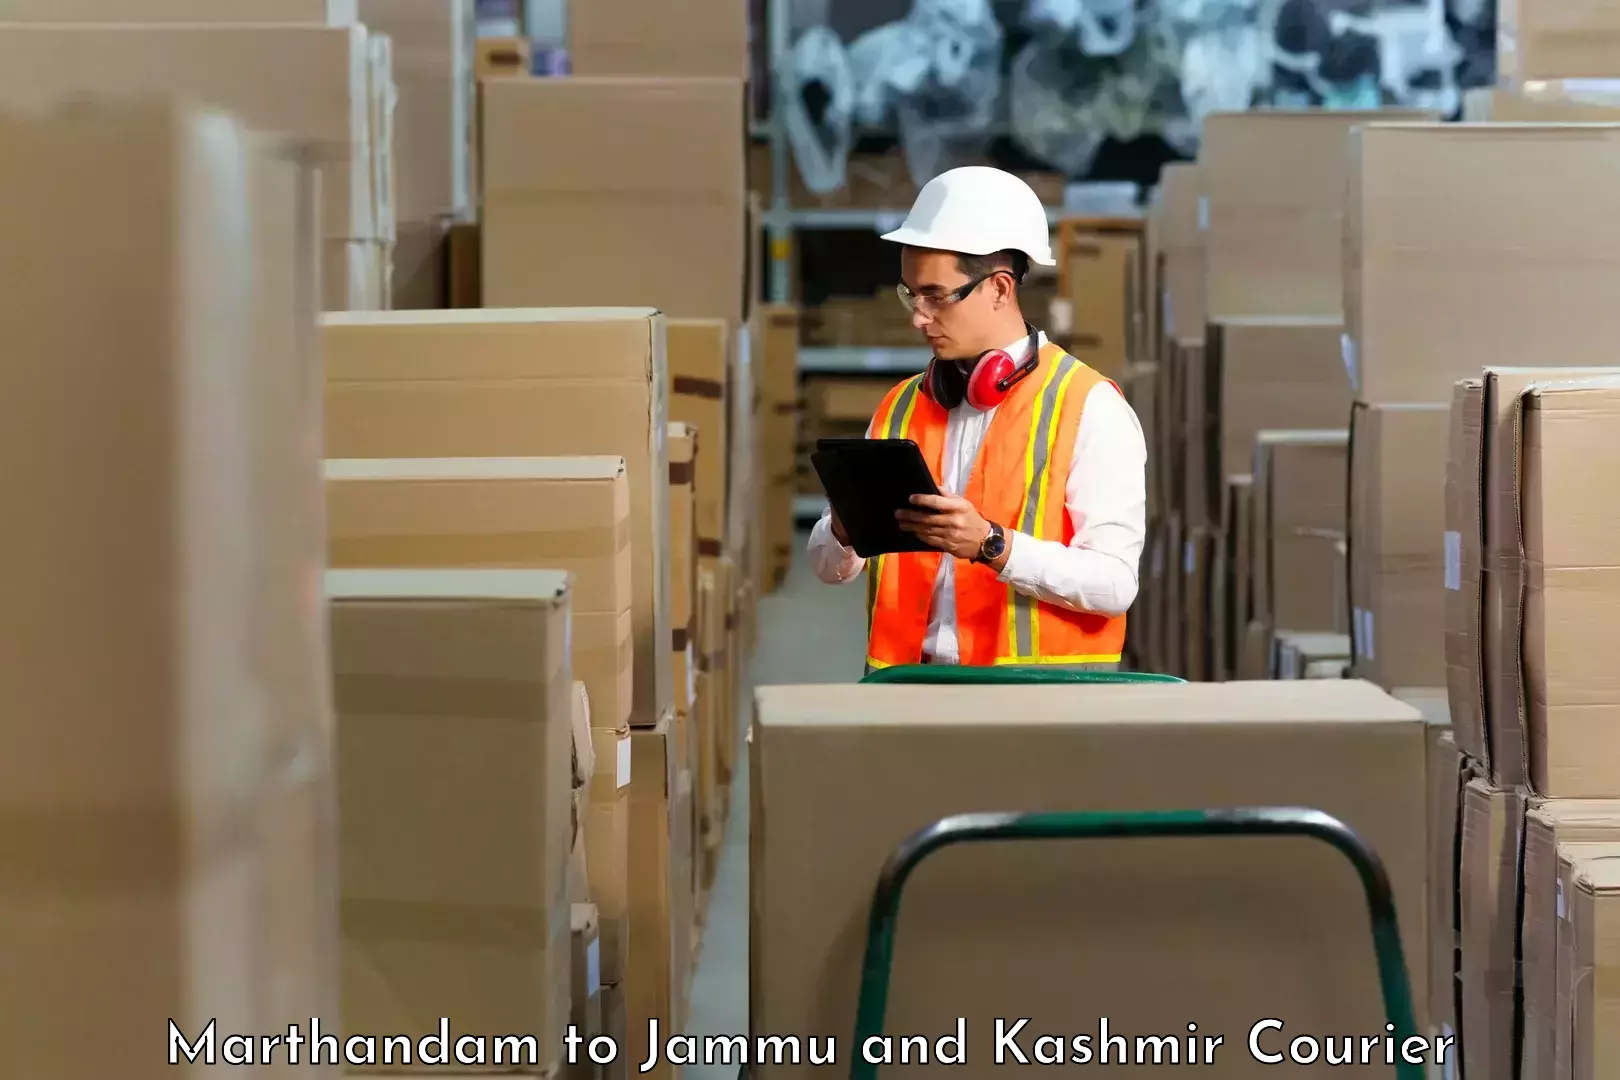 Secure shipping methods Marthandam to Rajouri